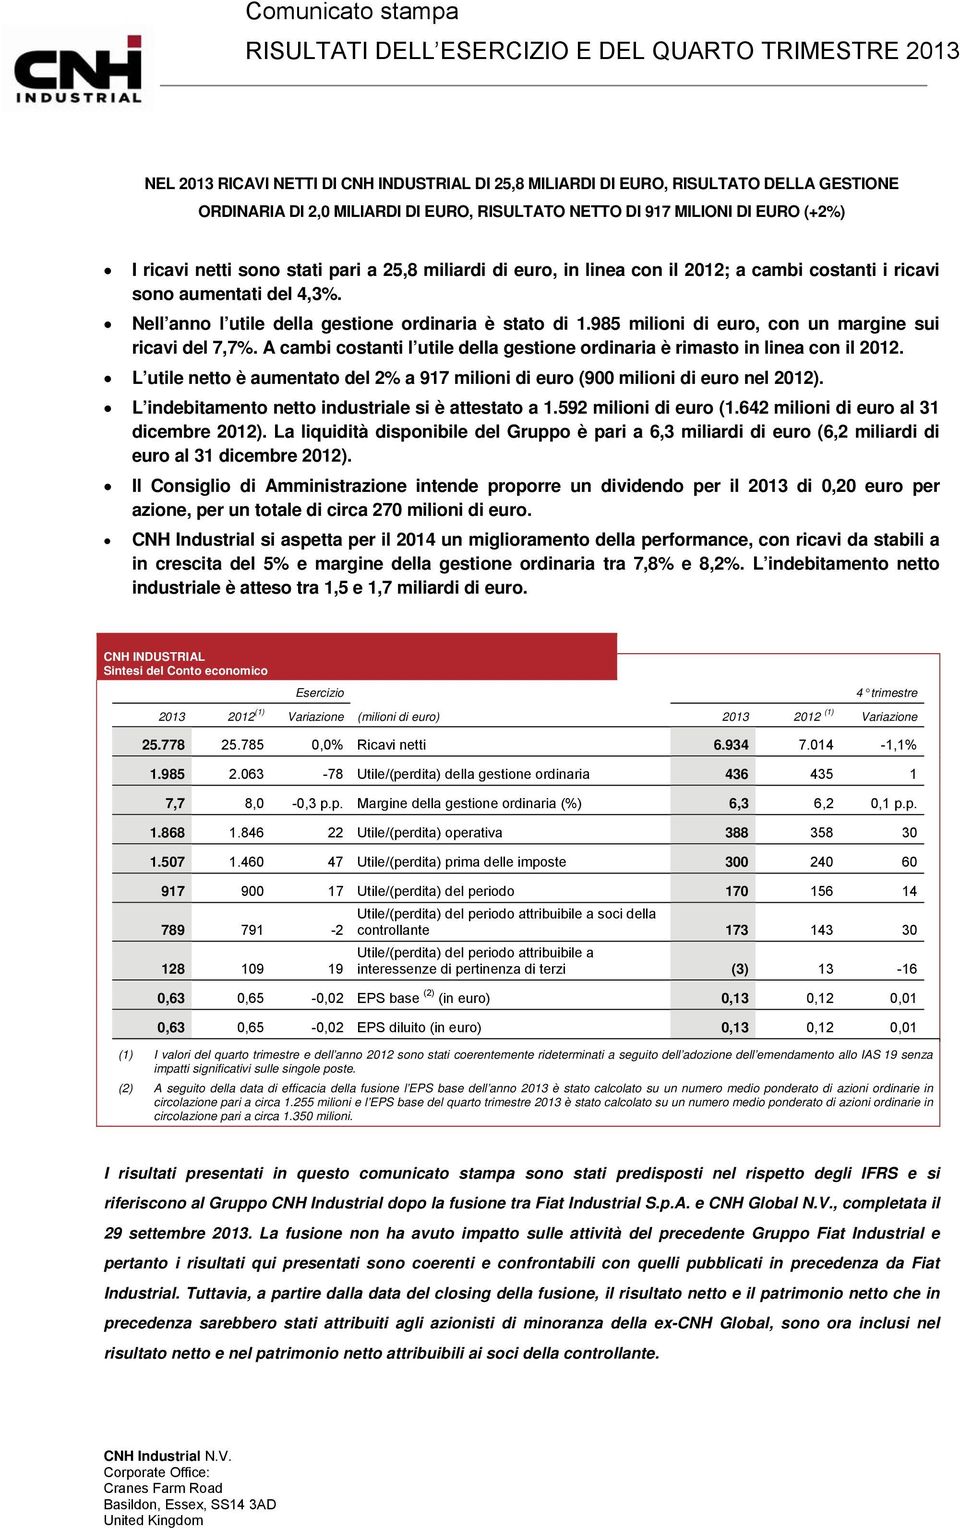 985 milioni di euro, con un margine sui ricavi del 7,7%. A cambi costanti l utile della gestione ordinaria è rimasto in linea con il 2012.